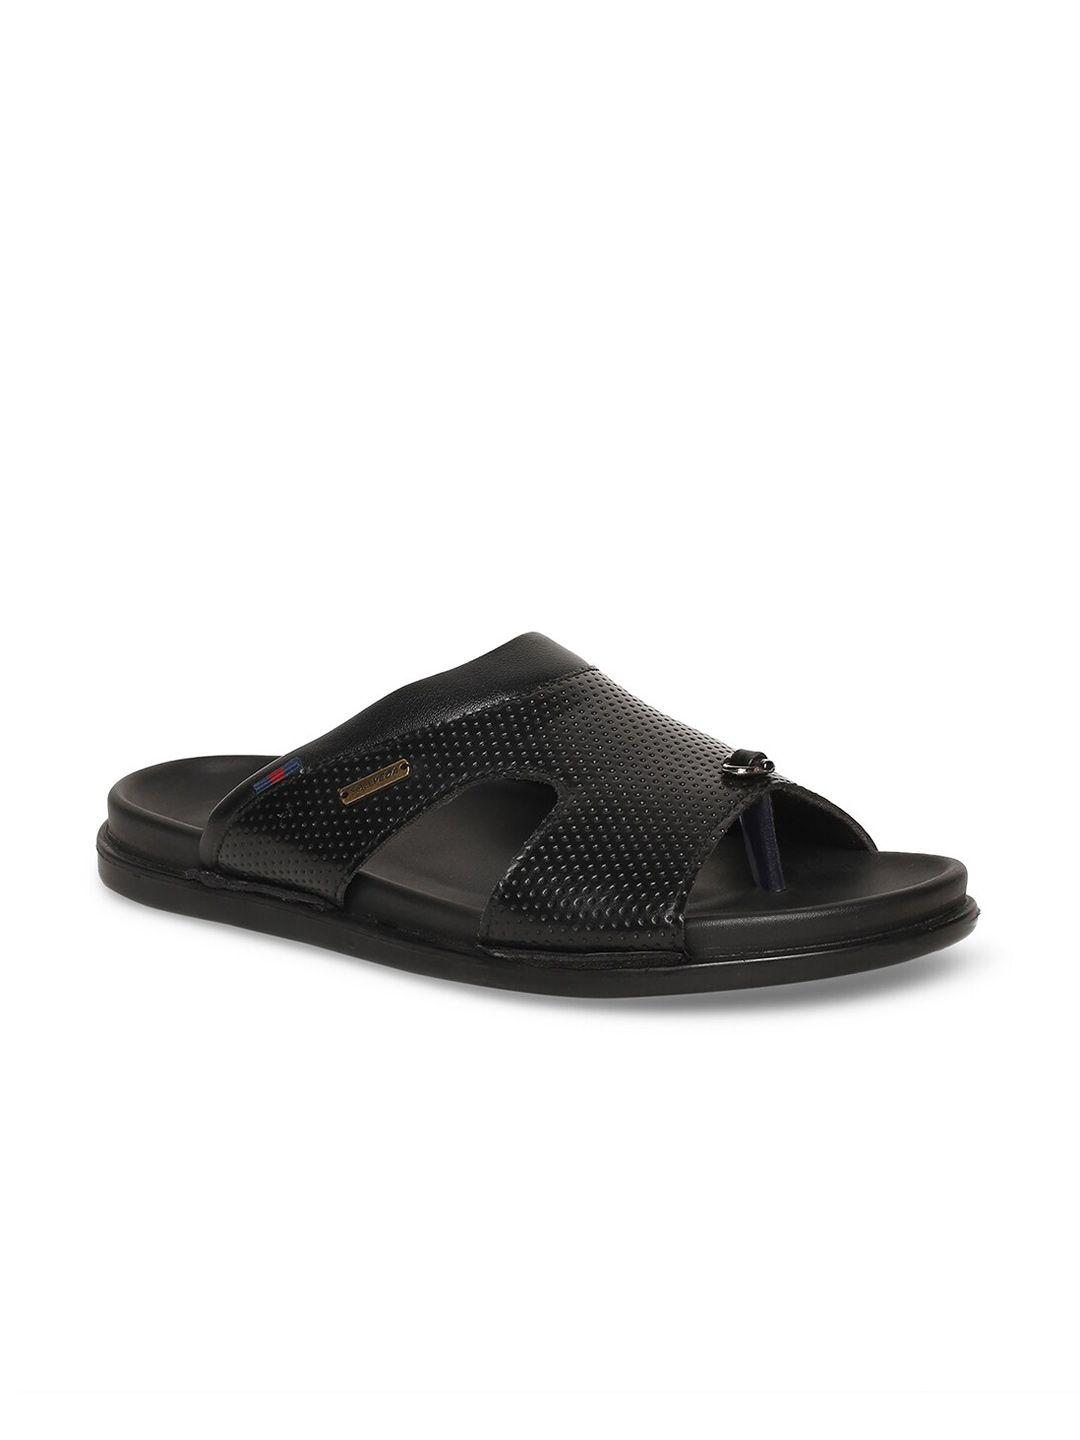 buckaroo men perforated comfort sandals